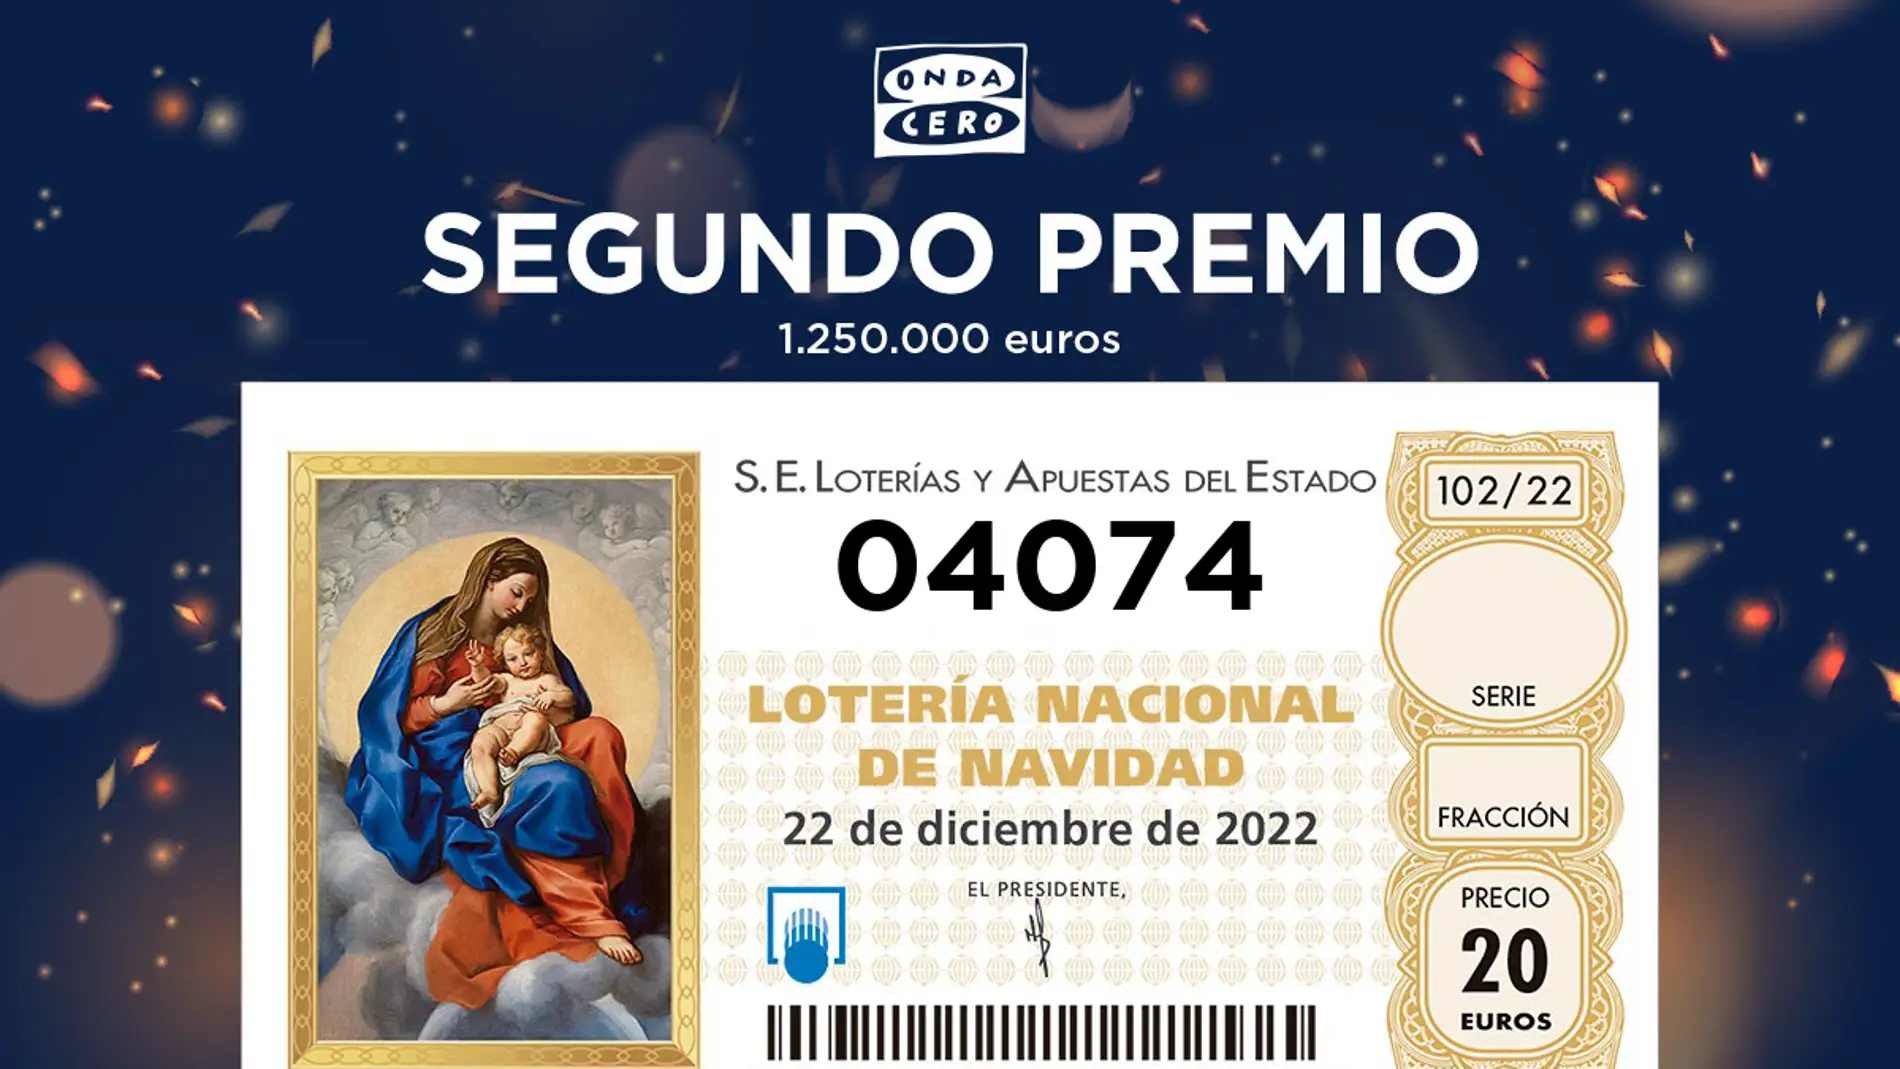 Arco iris pelota Maldición Comprueba el Segundo Premio de la Lotería de Navidad 2022 | Onda Cero Radio